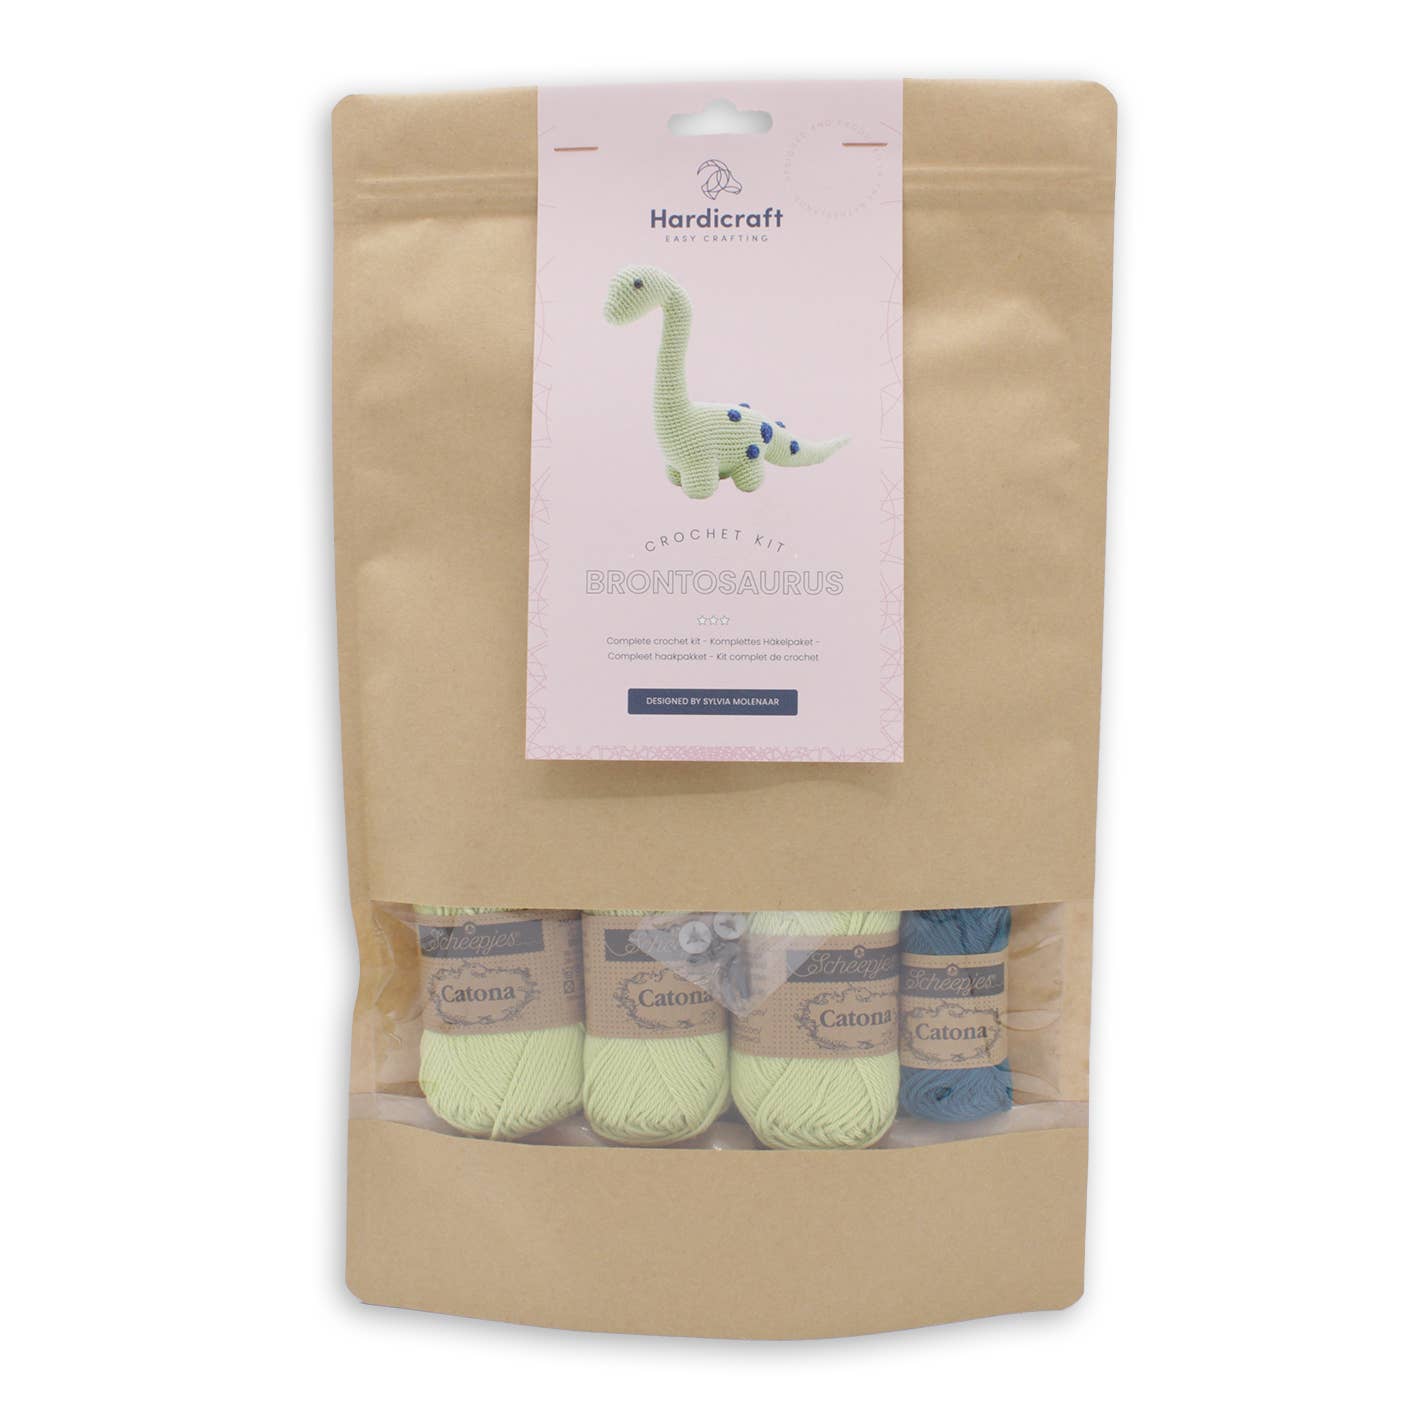 Brontosaurus Crochet Kit - Hardicraft